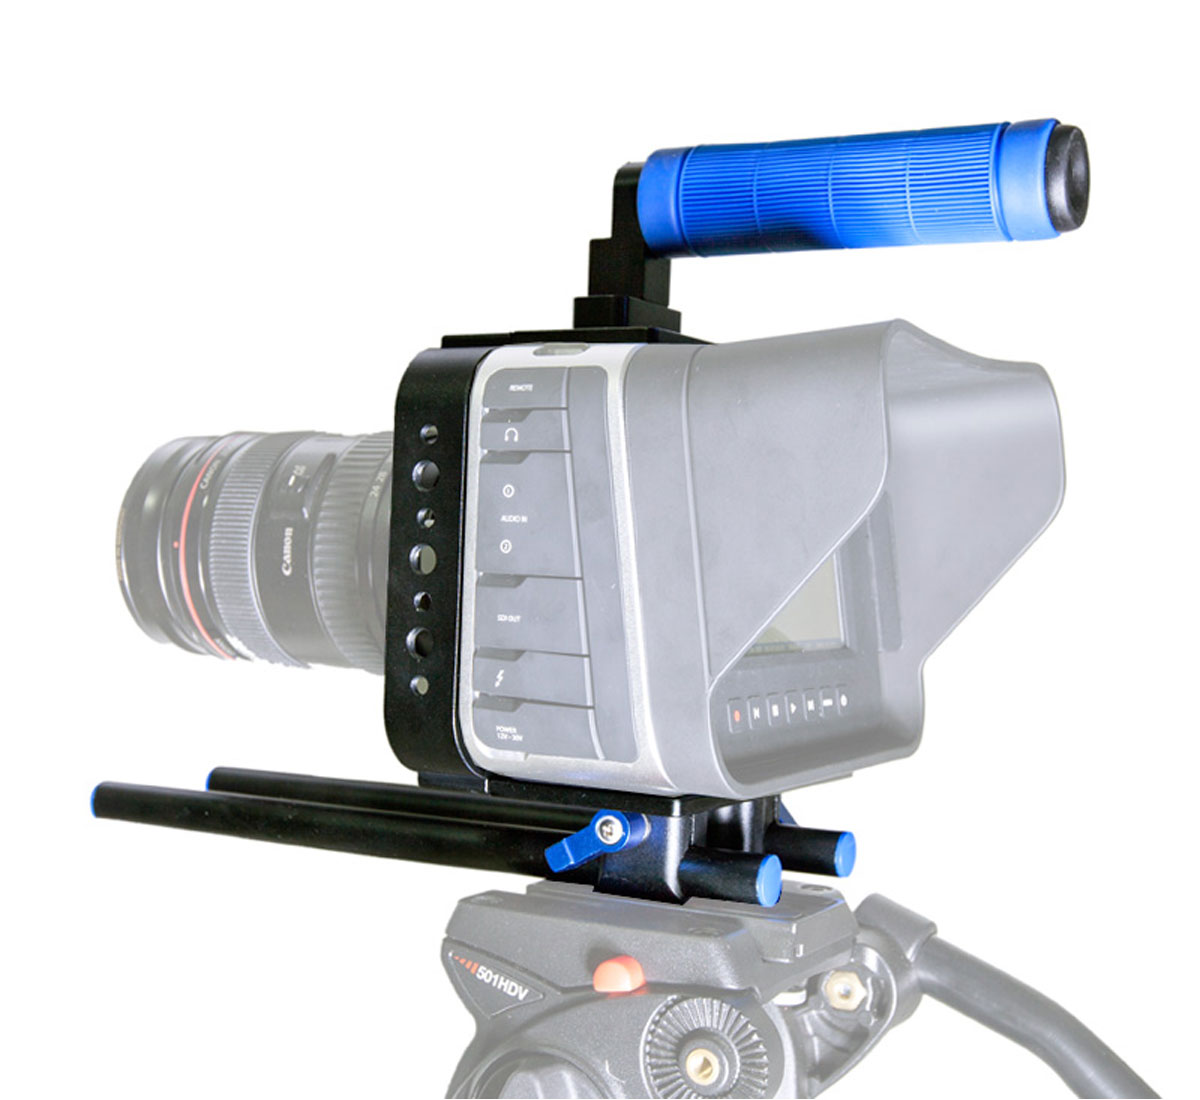 ayex Cage mit Handgriff und Halterungssystem für Blackmagic Cinema Camera